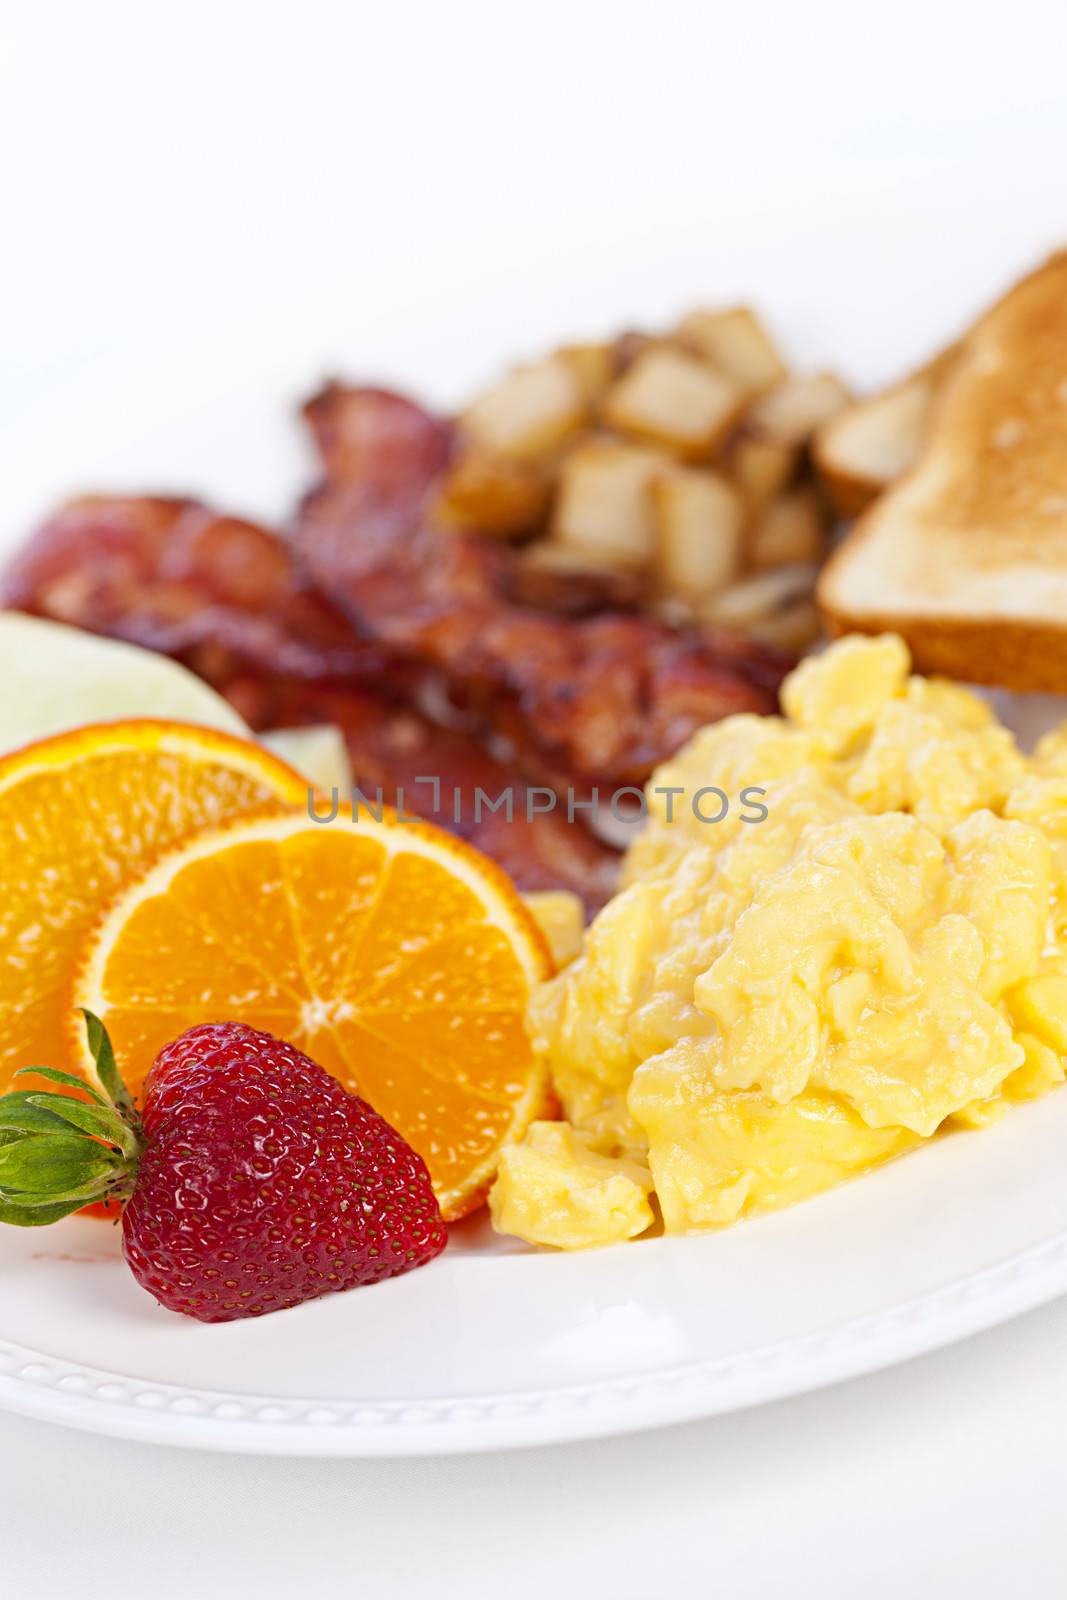 Breakfast plate by elenathewise